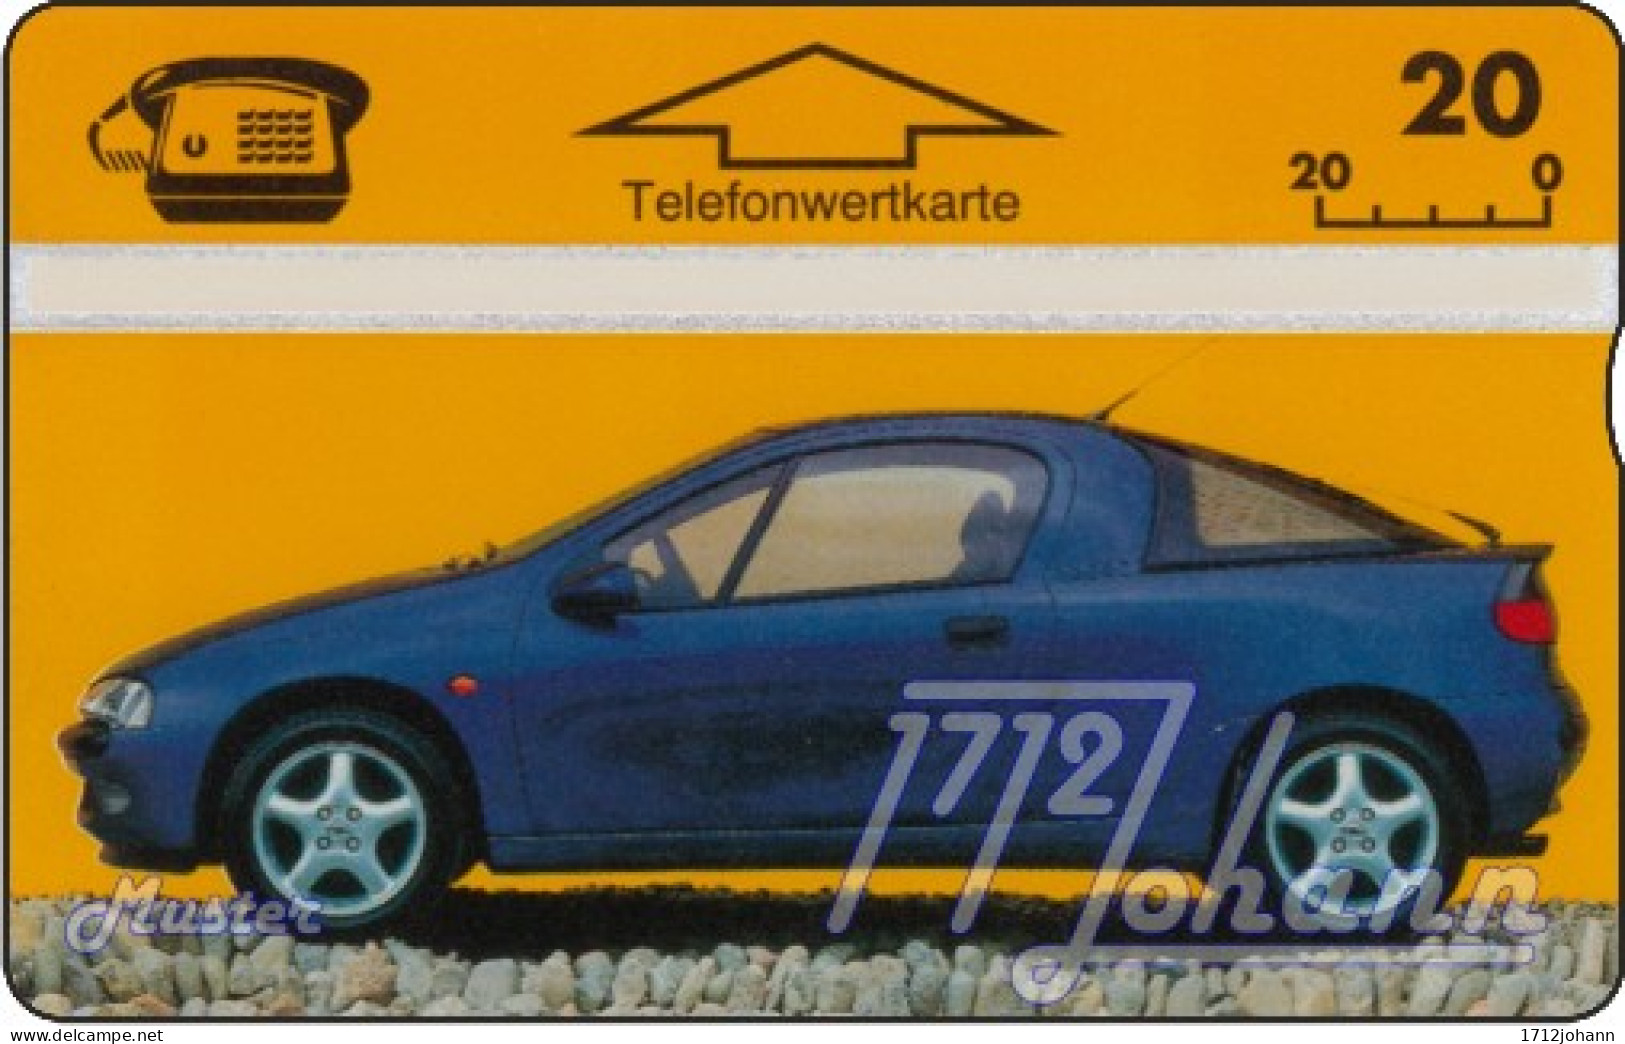 TWK Österreich Privat: 'Opel Tigra' Gebr. - Autriche